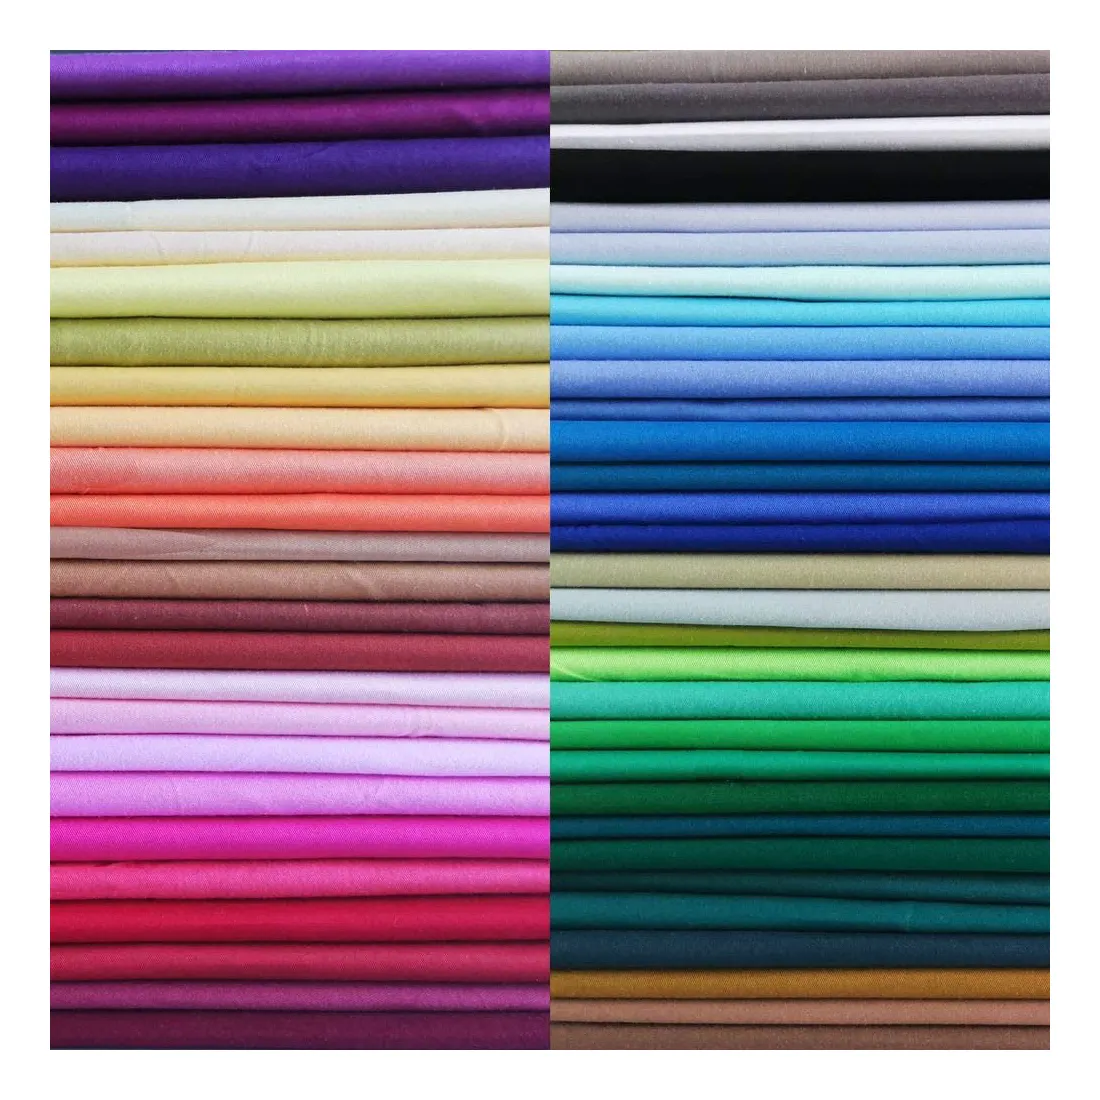 Haute qualité vente en gros naturel respirant vif doux multicolore textiles de maison 100% coton tissu pour la couture bricolage artisanat